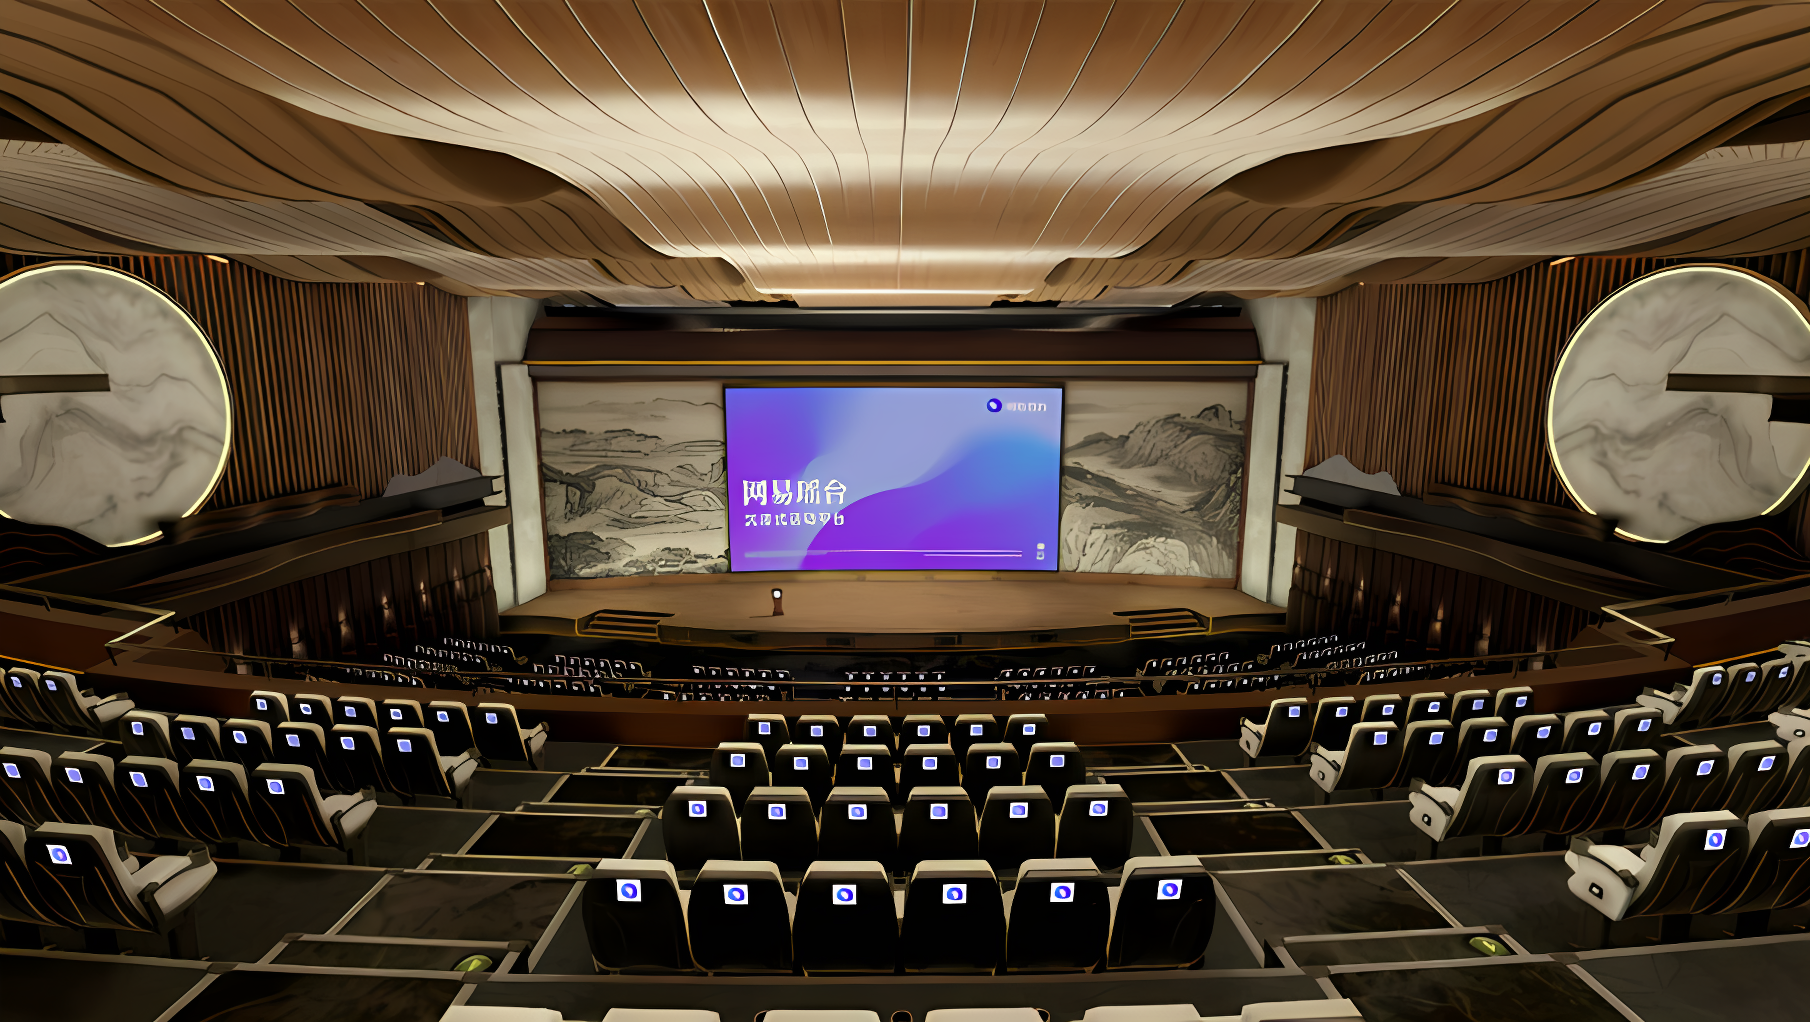 这是一个现代化的演讲厅，配有大屏幕和讲台。座位排列整齐，墙上装饰有艺术雕塑，整体显得高端且专业。